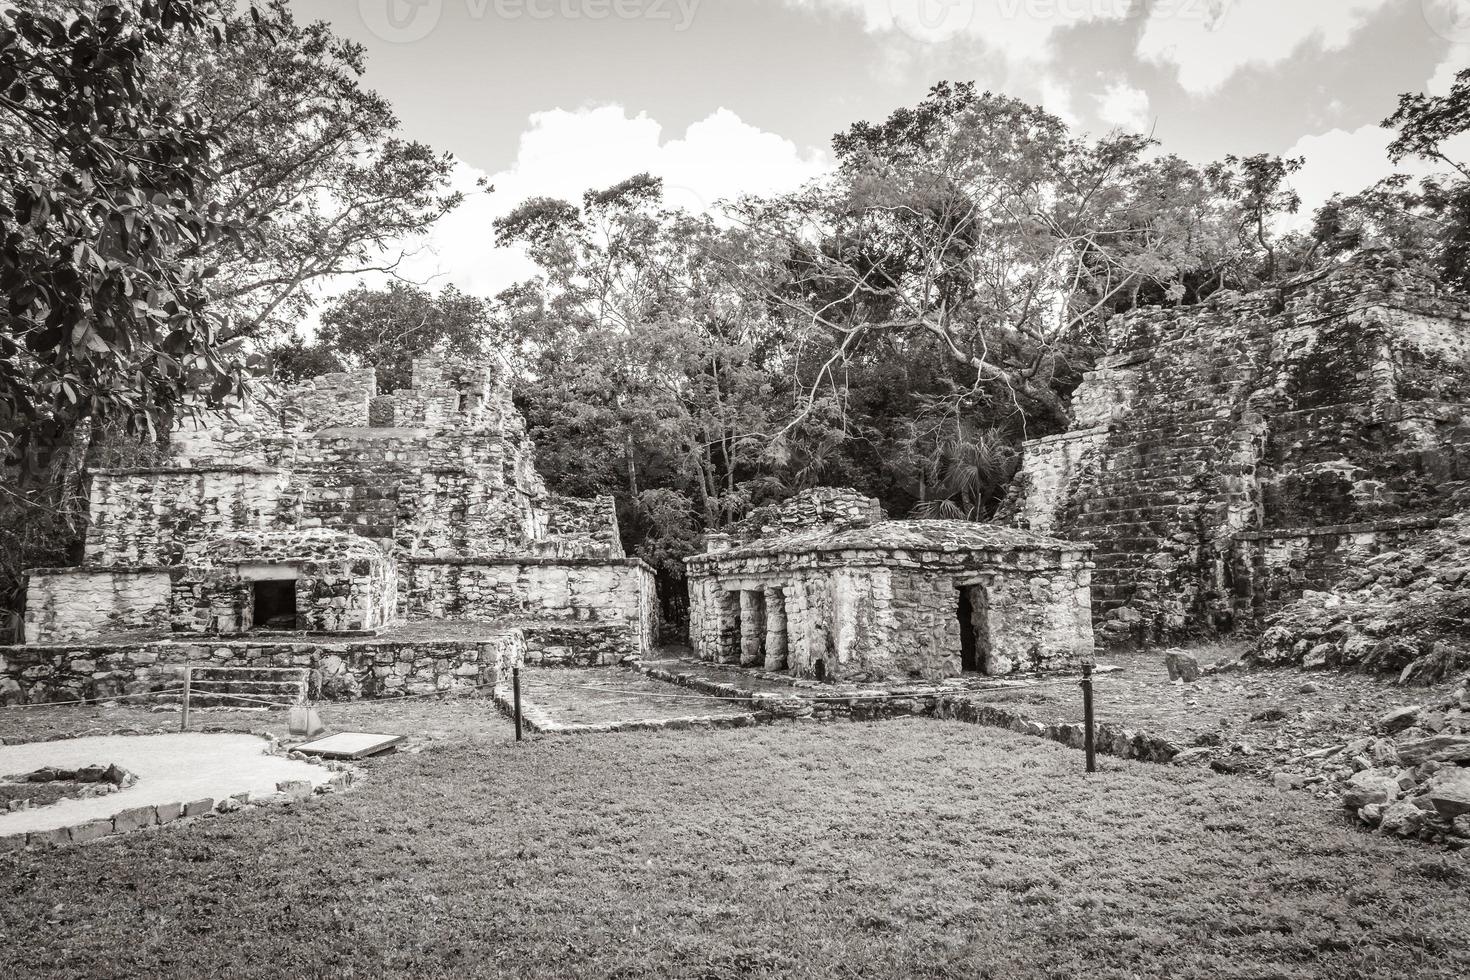 antico sito maya con rovine di templi piramidi manufatti muyil messico. foto